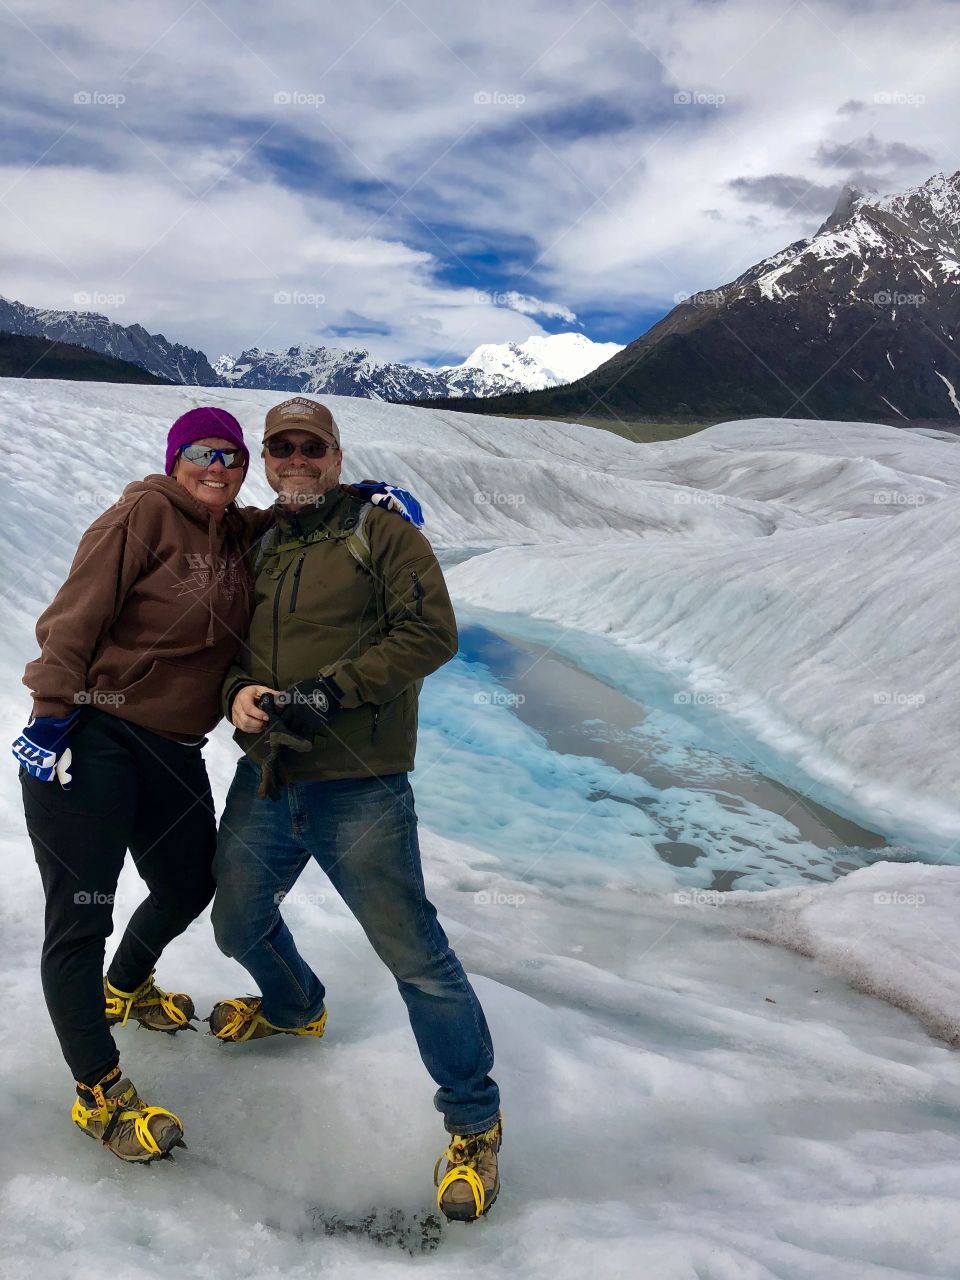 Awesome glacier hike!